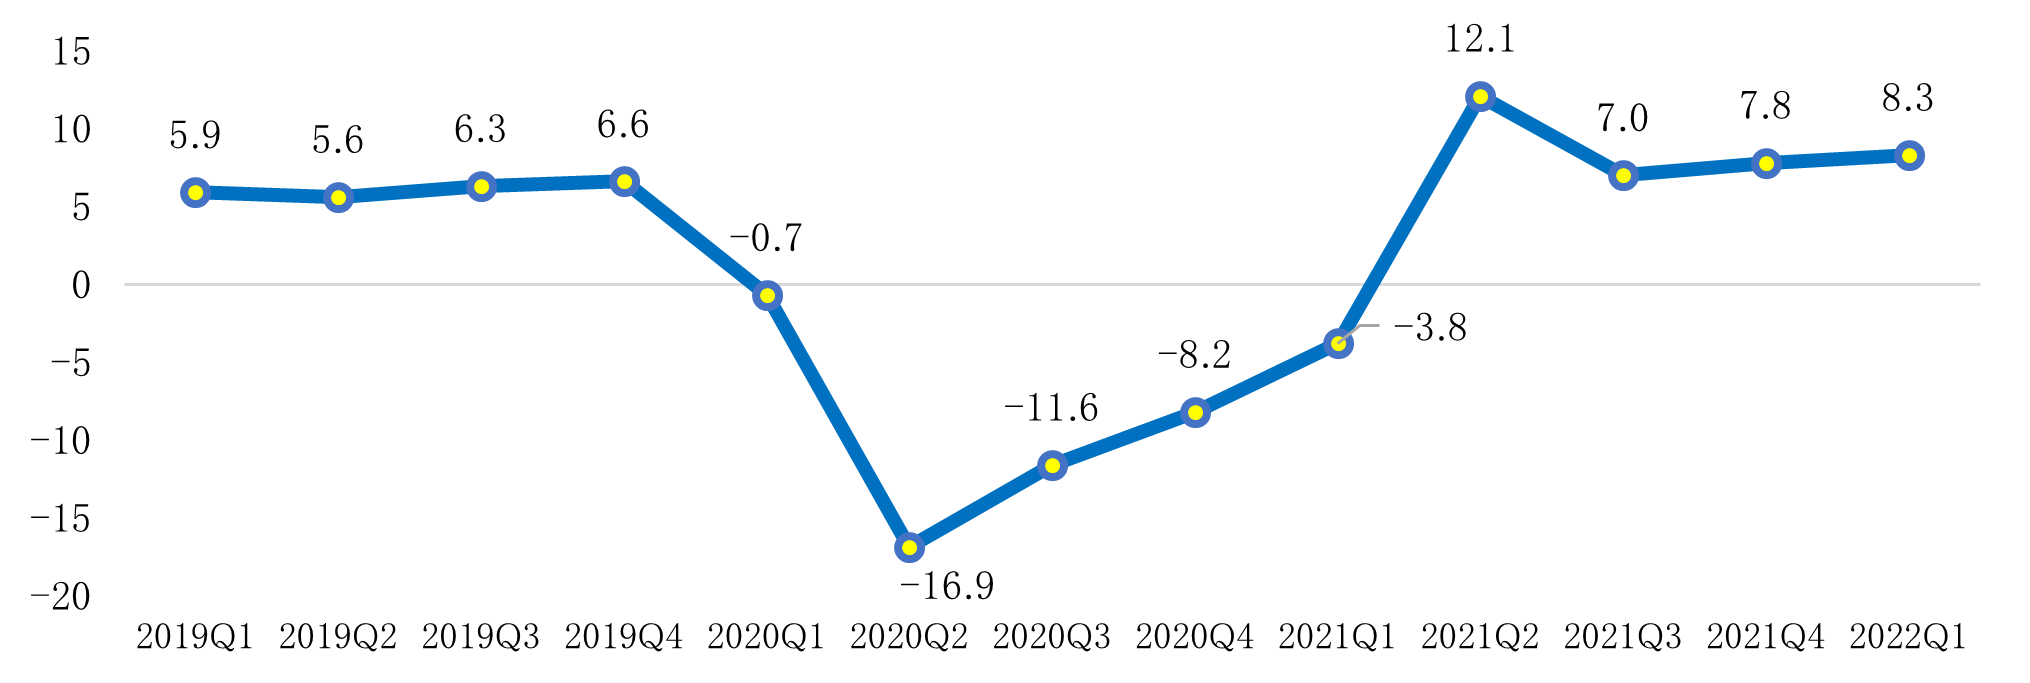 フィリピンの2022年第1四半期のＧＤＰ成長率